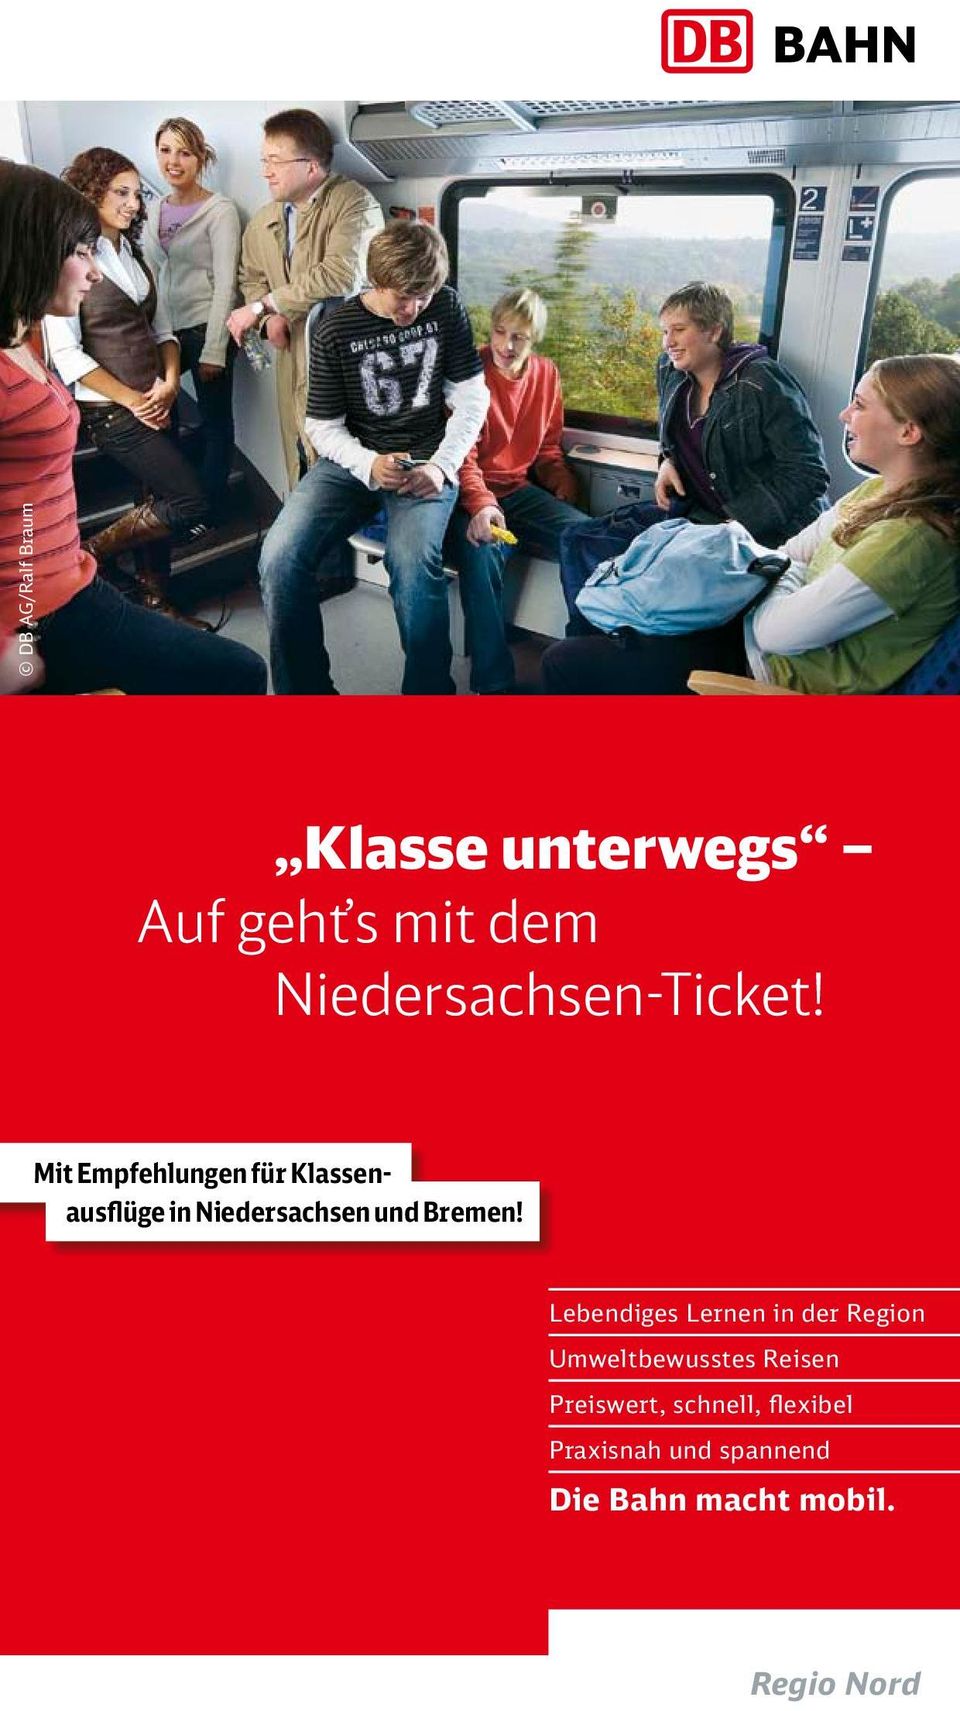 Mit Empfehlungen für Klassenausflüge in Niedersachsen und Bremen!